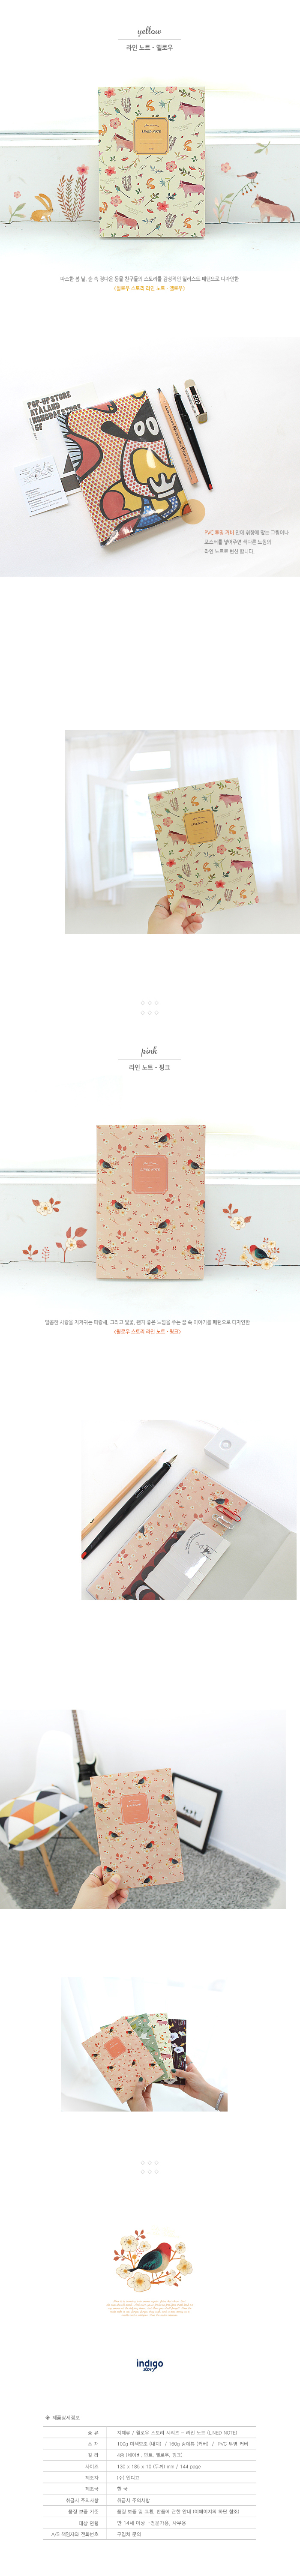 beautiful stationery notebook [beautiful stationery, beautiful notebooks, beautiful notebook]